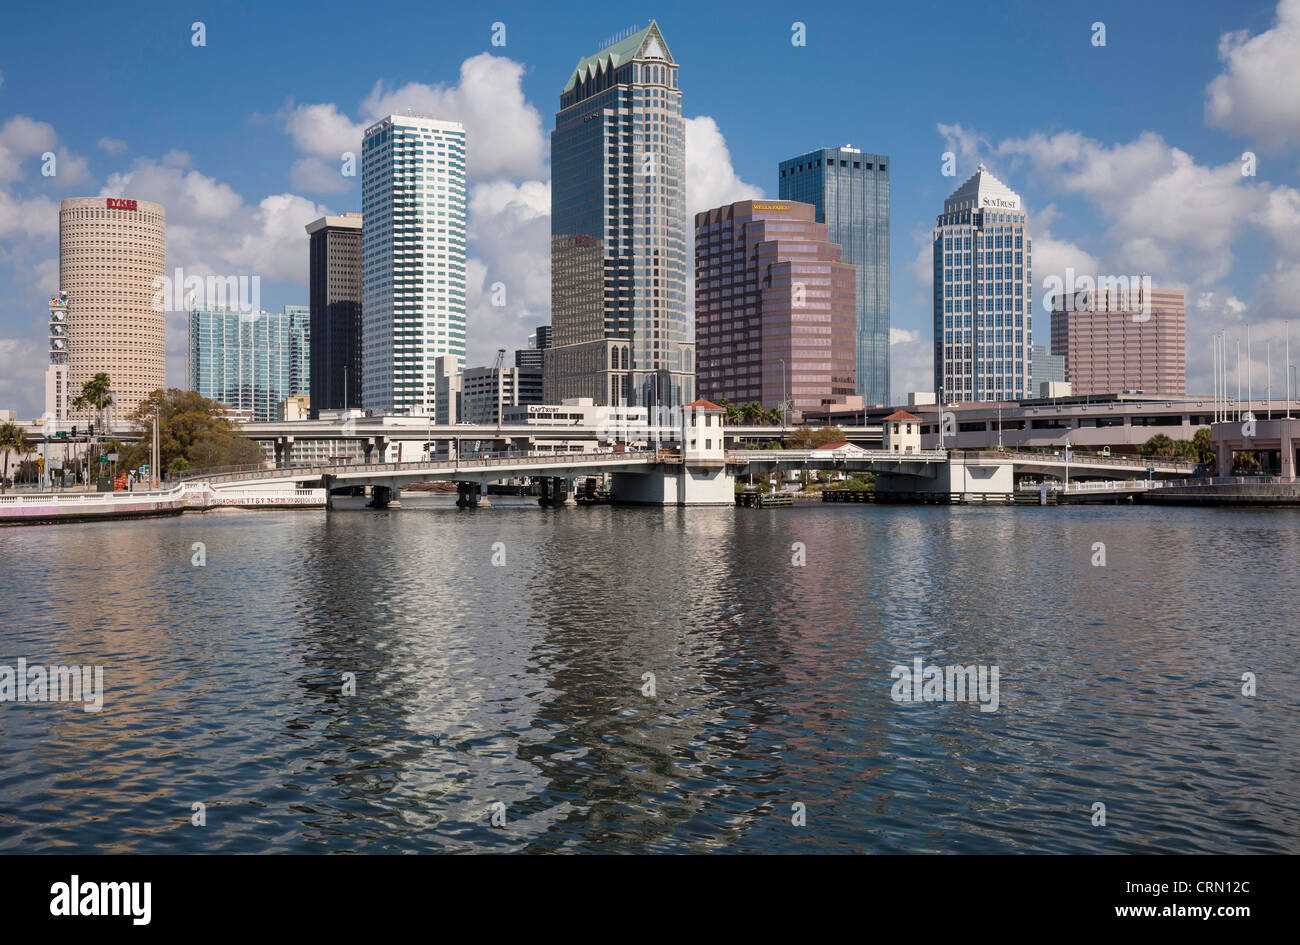 El centro de Tampa Tampa Bay y el Horizonte, Río Hillsborough, Tampa, FL. Foto de stock